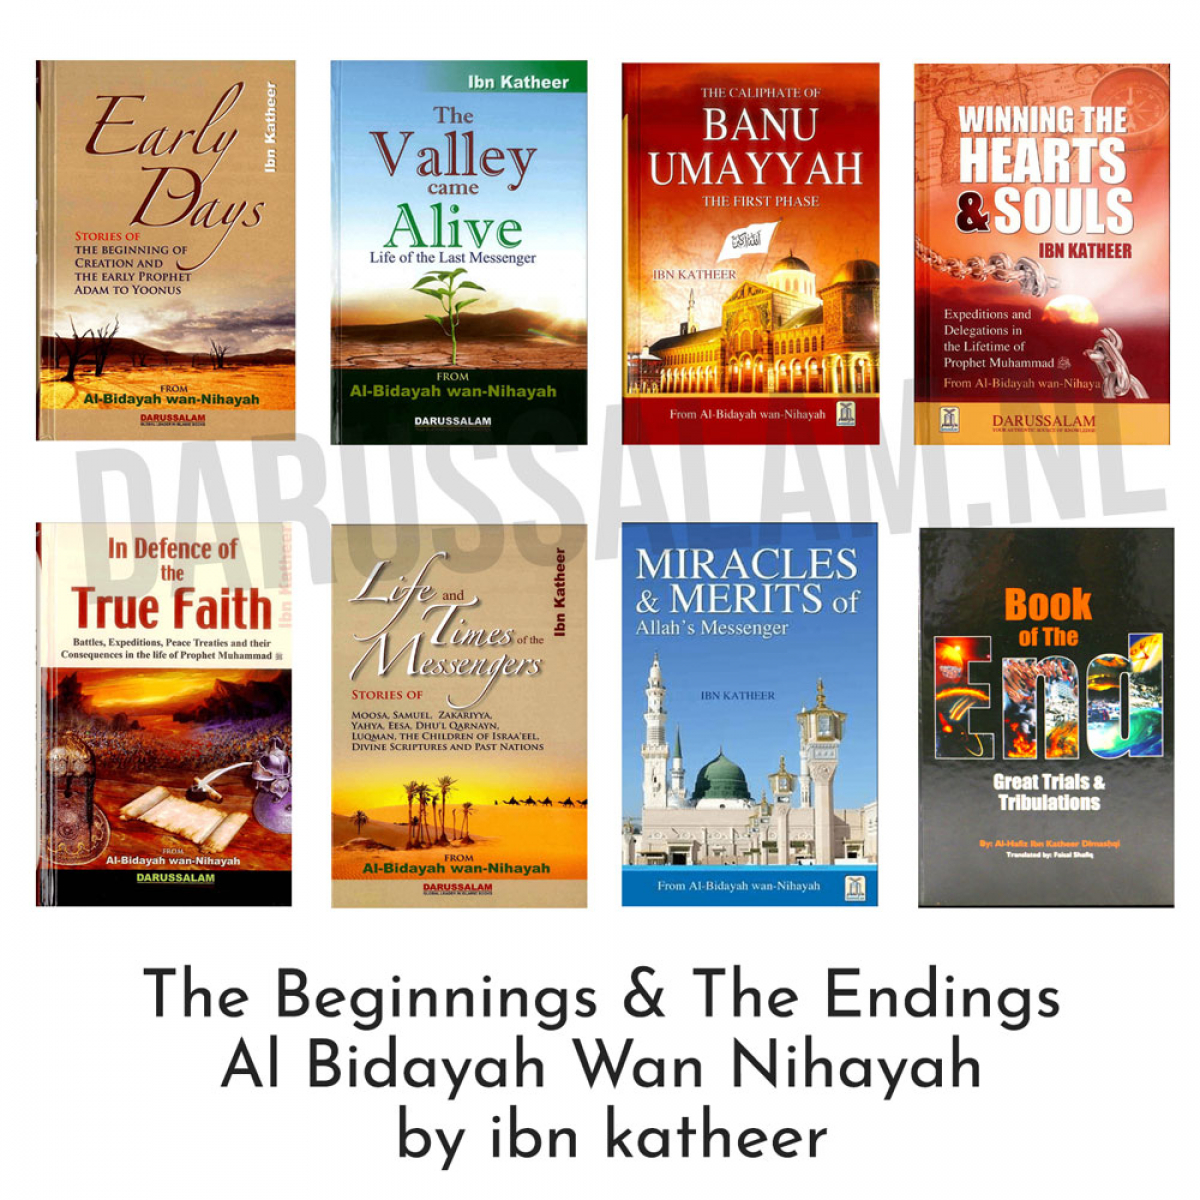 The Beginnings & The Endings : Al - Bidayah wan - Nihayah